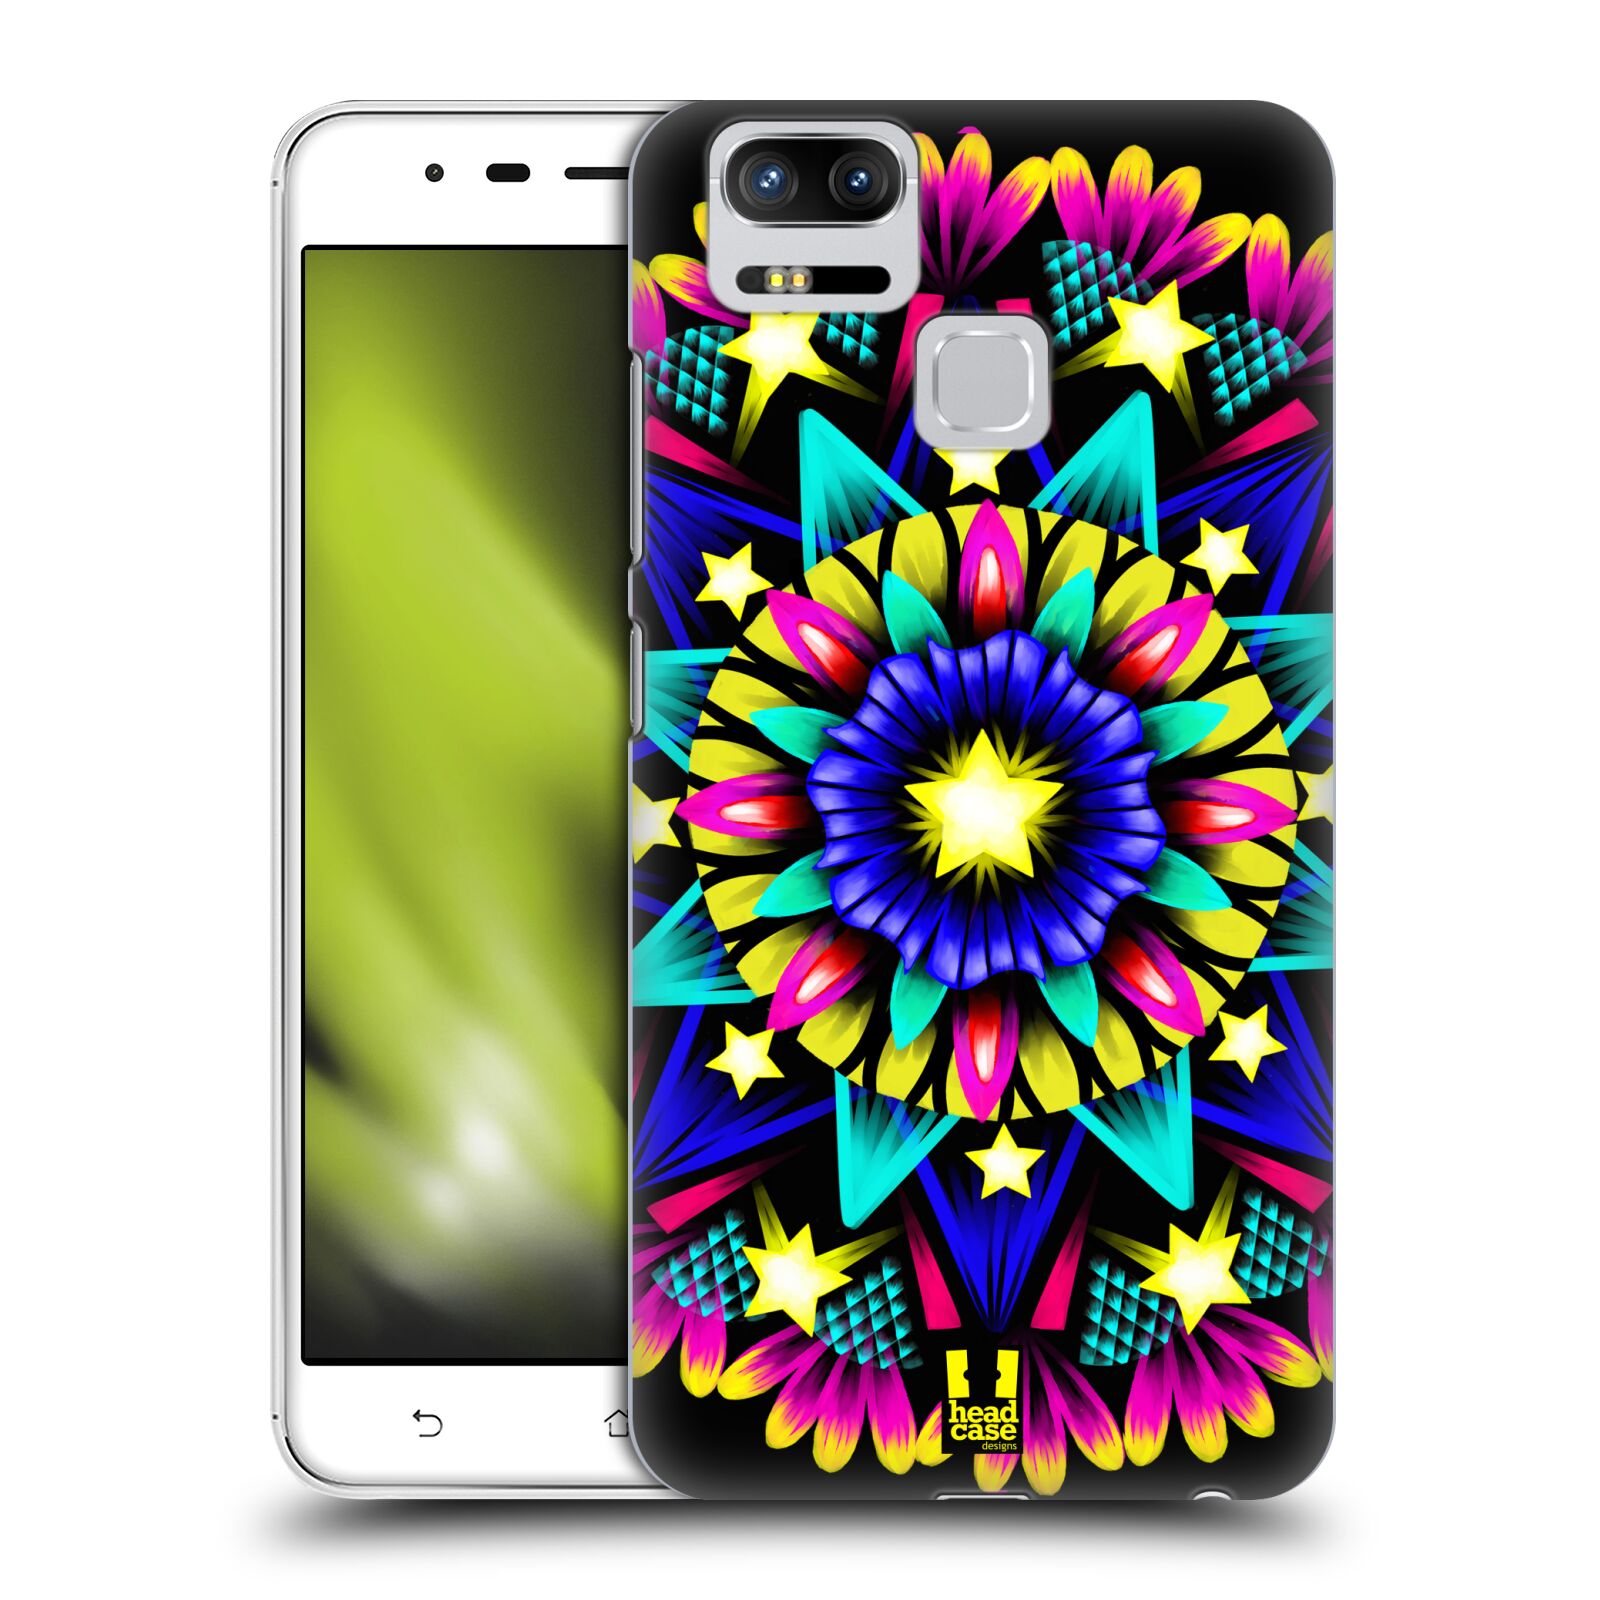 HEAD CASE plastový obal na mobil Asus Zenfone 3 Zoom ZE553KL vzor Indie Mandala kaleidoskop barevný vzor HVĚZDA